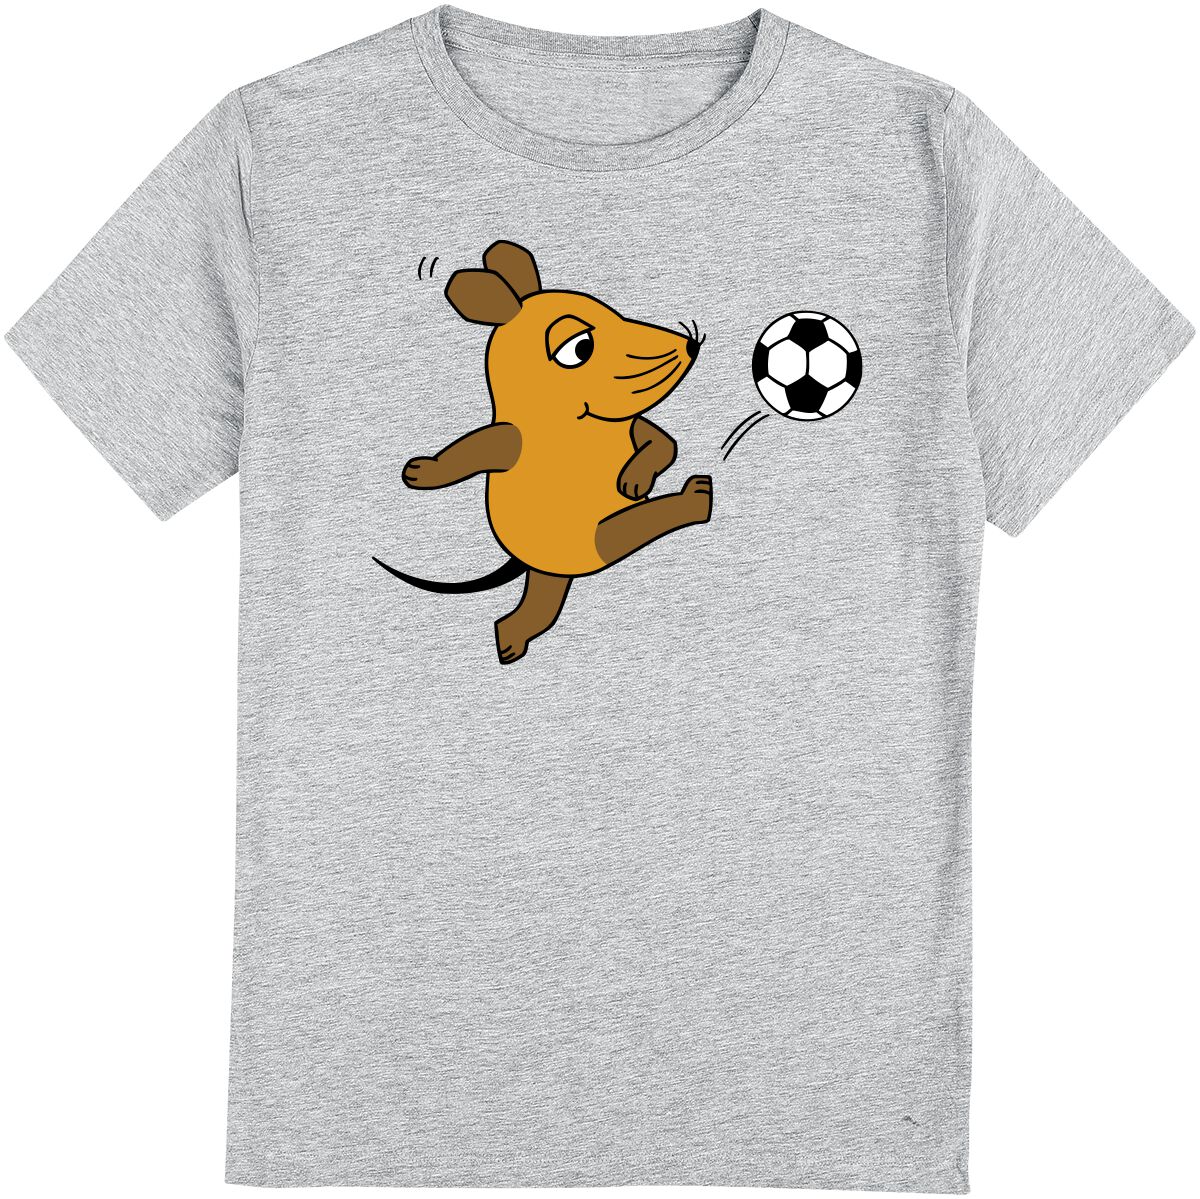 Die Sendung mit der Maus Kids - Die Maus - Fußball T-Shirt grau meliert in 128